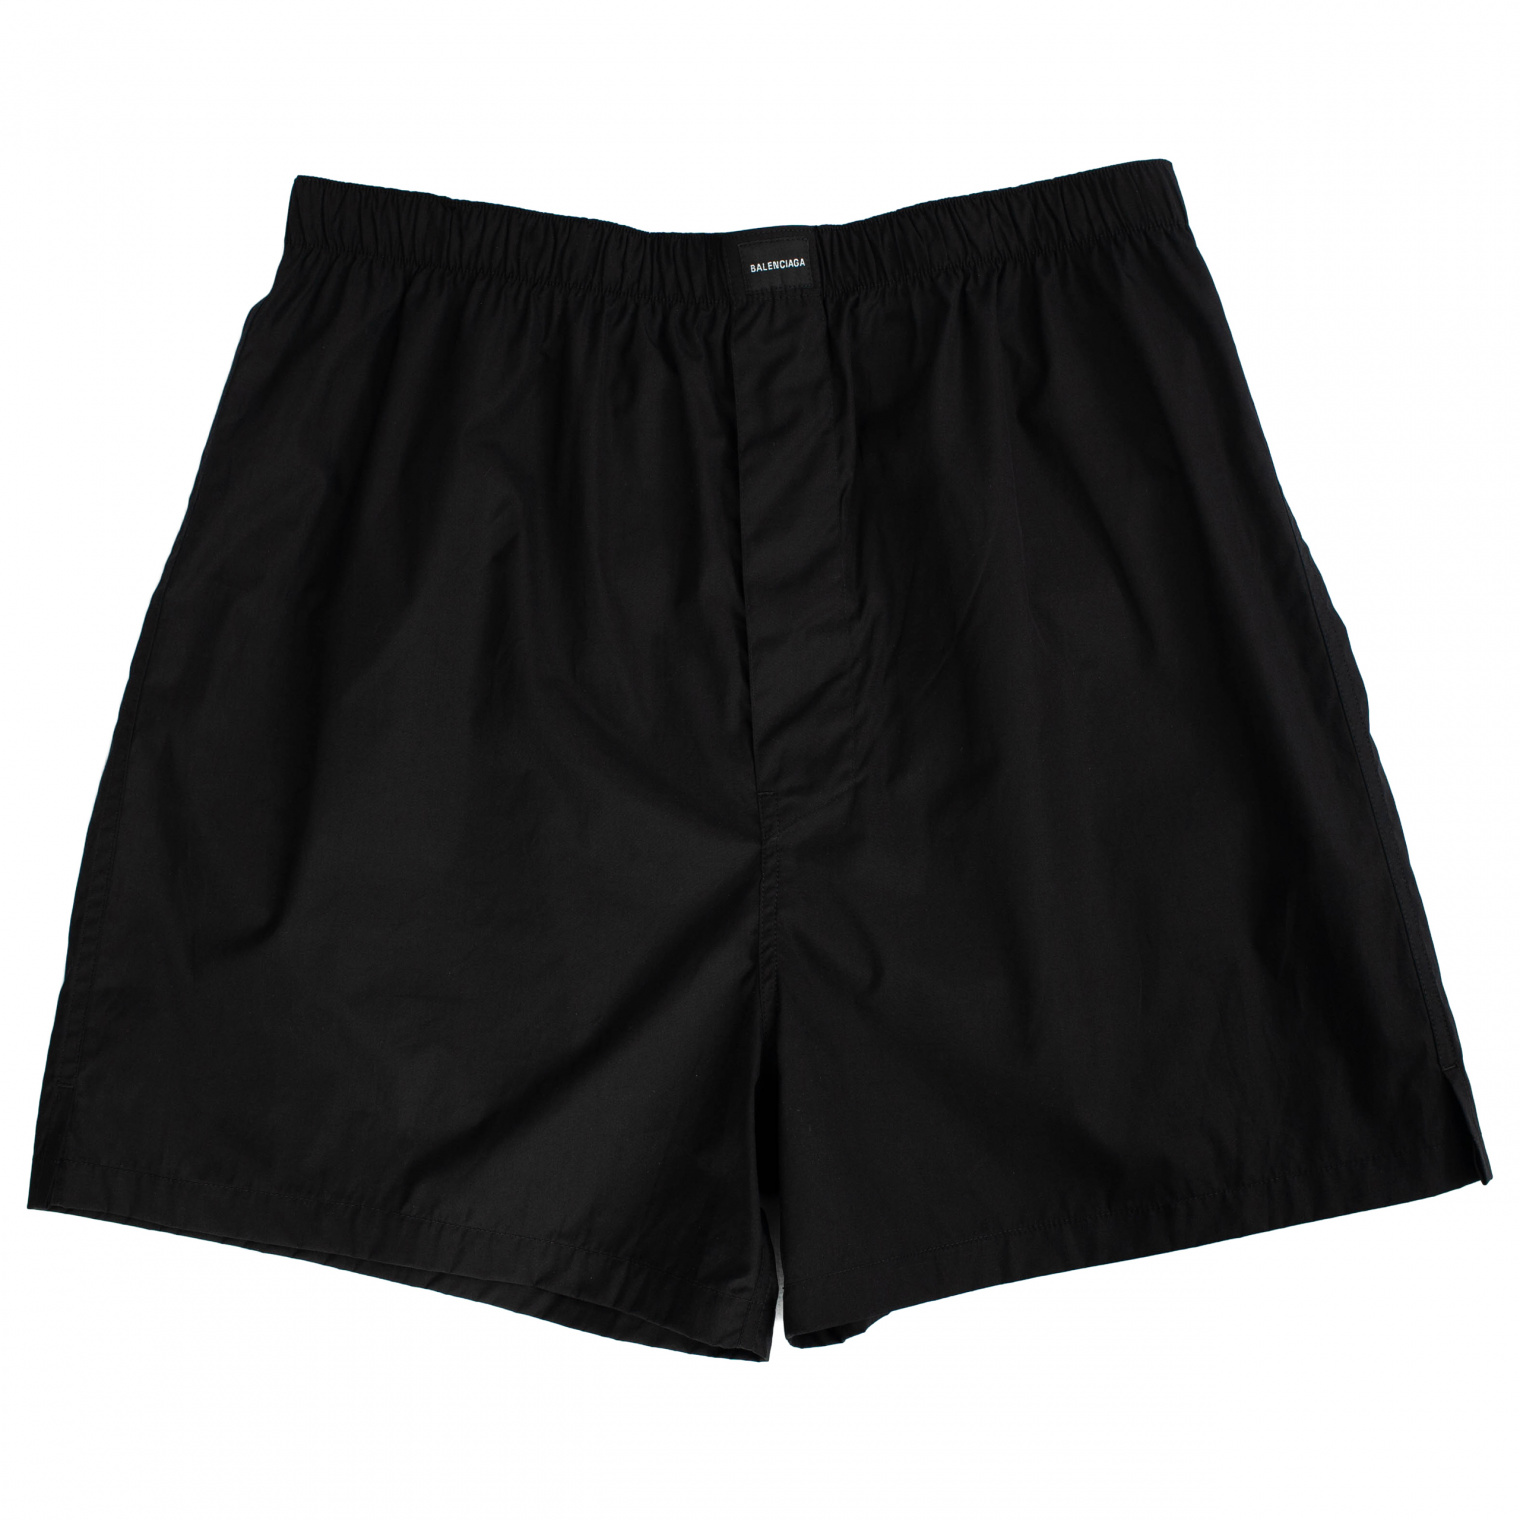 Balenciaga Cotton Boxer Shorts in Black